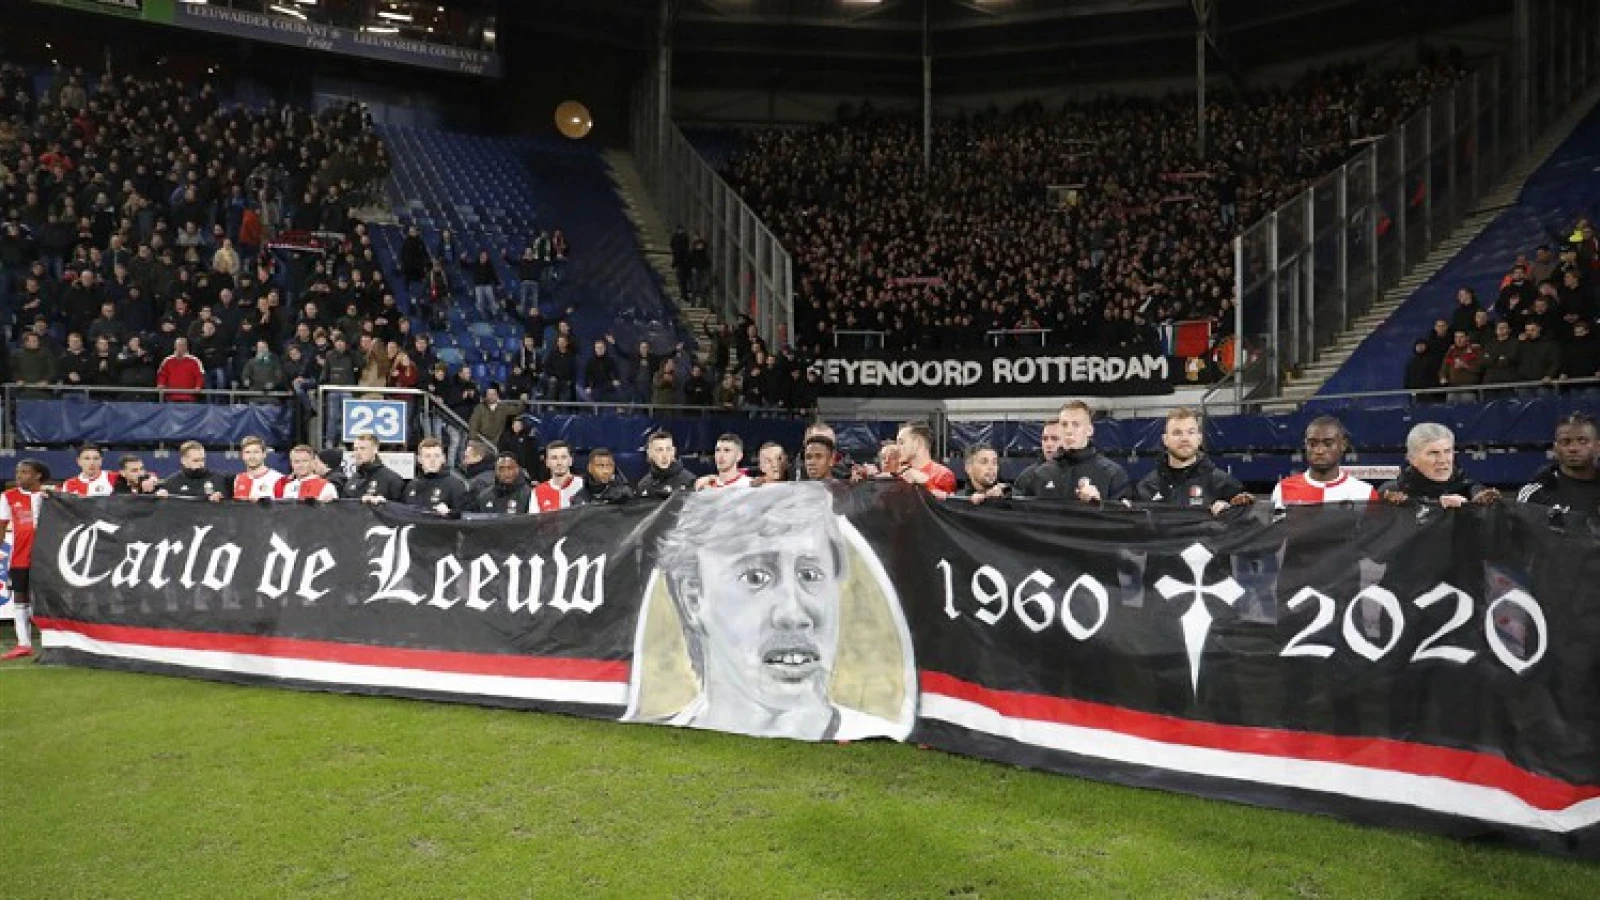 VIDEO | Spelers en supporters eren Carlo de Leeuw na afloop van wedstrijd tegen sc Heerenveen